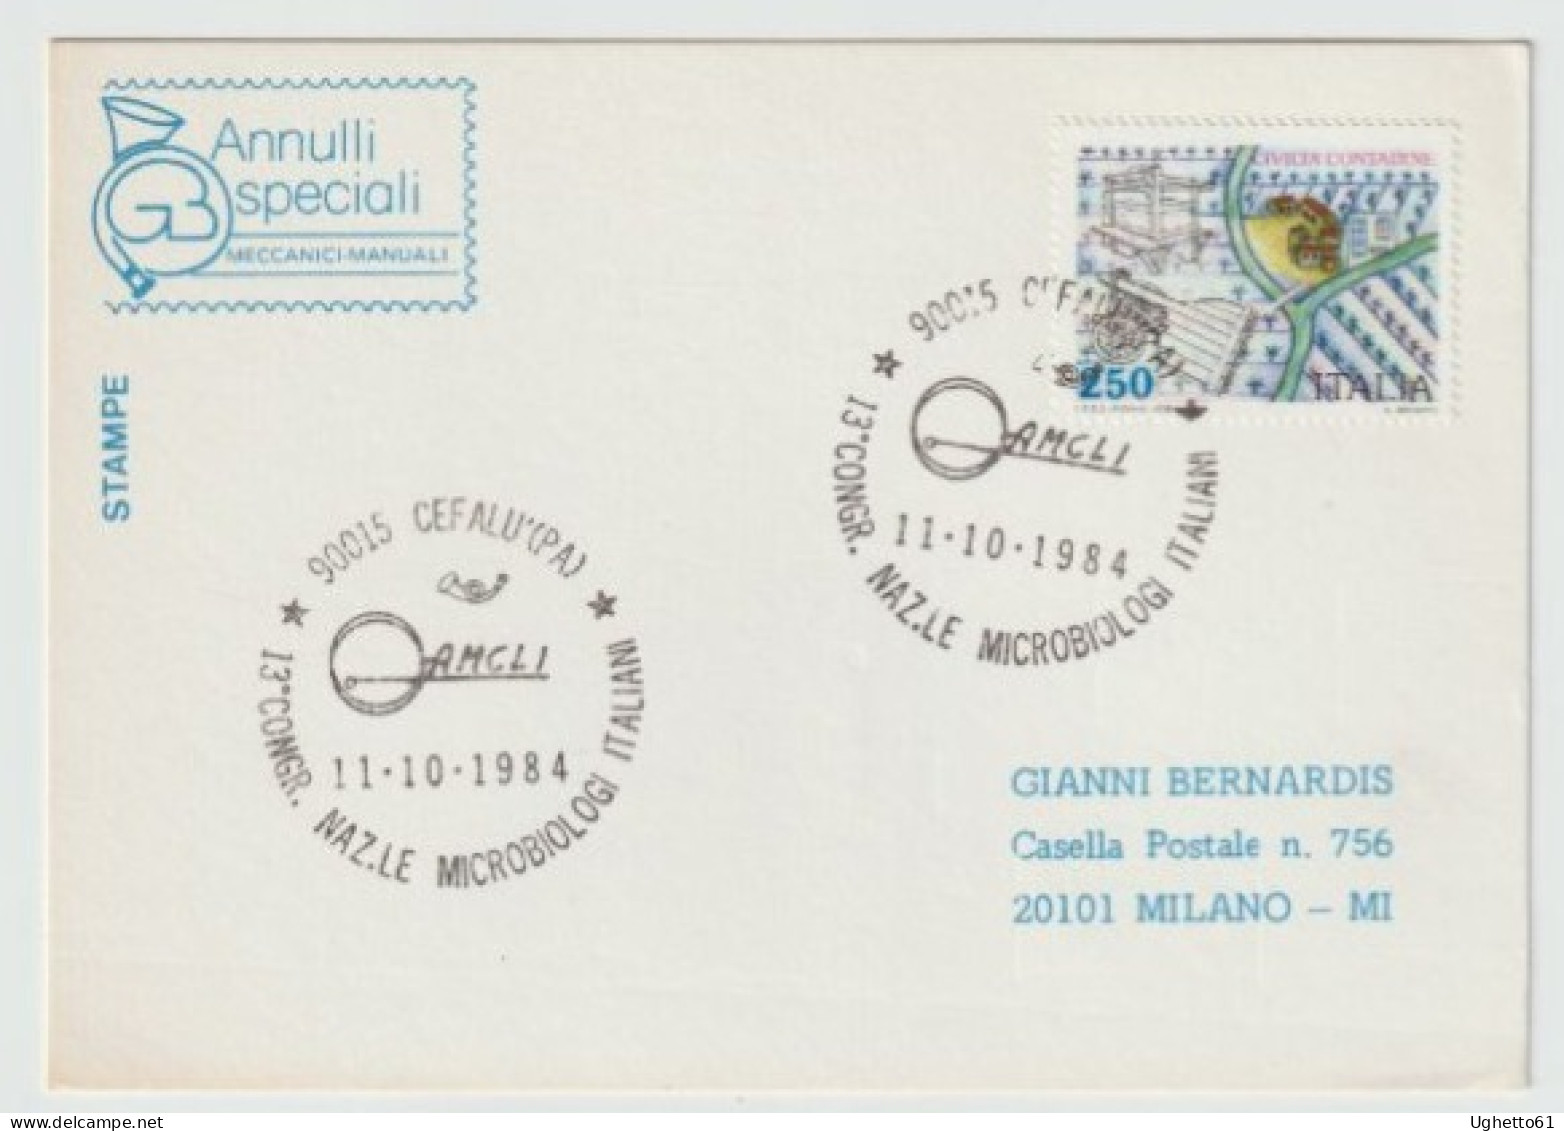 Cefalù - Palermo - Annullo Speciale 13° Congresso Nazionale Microbiologi Italiani 1984 - Briefmarken (Abbildungen)